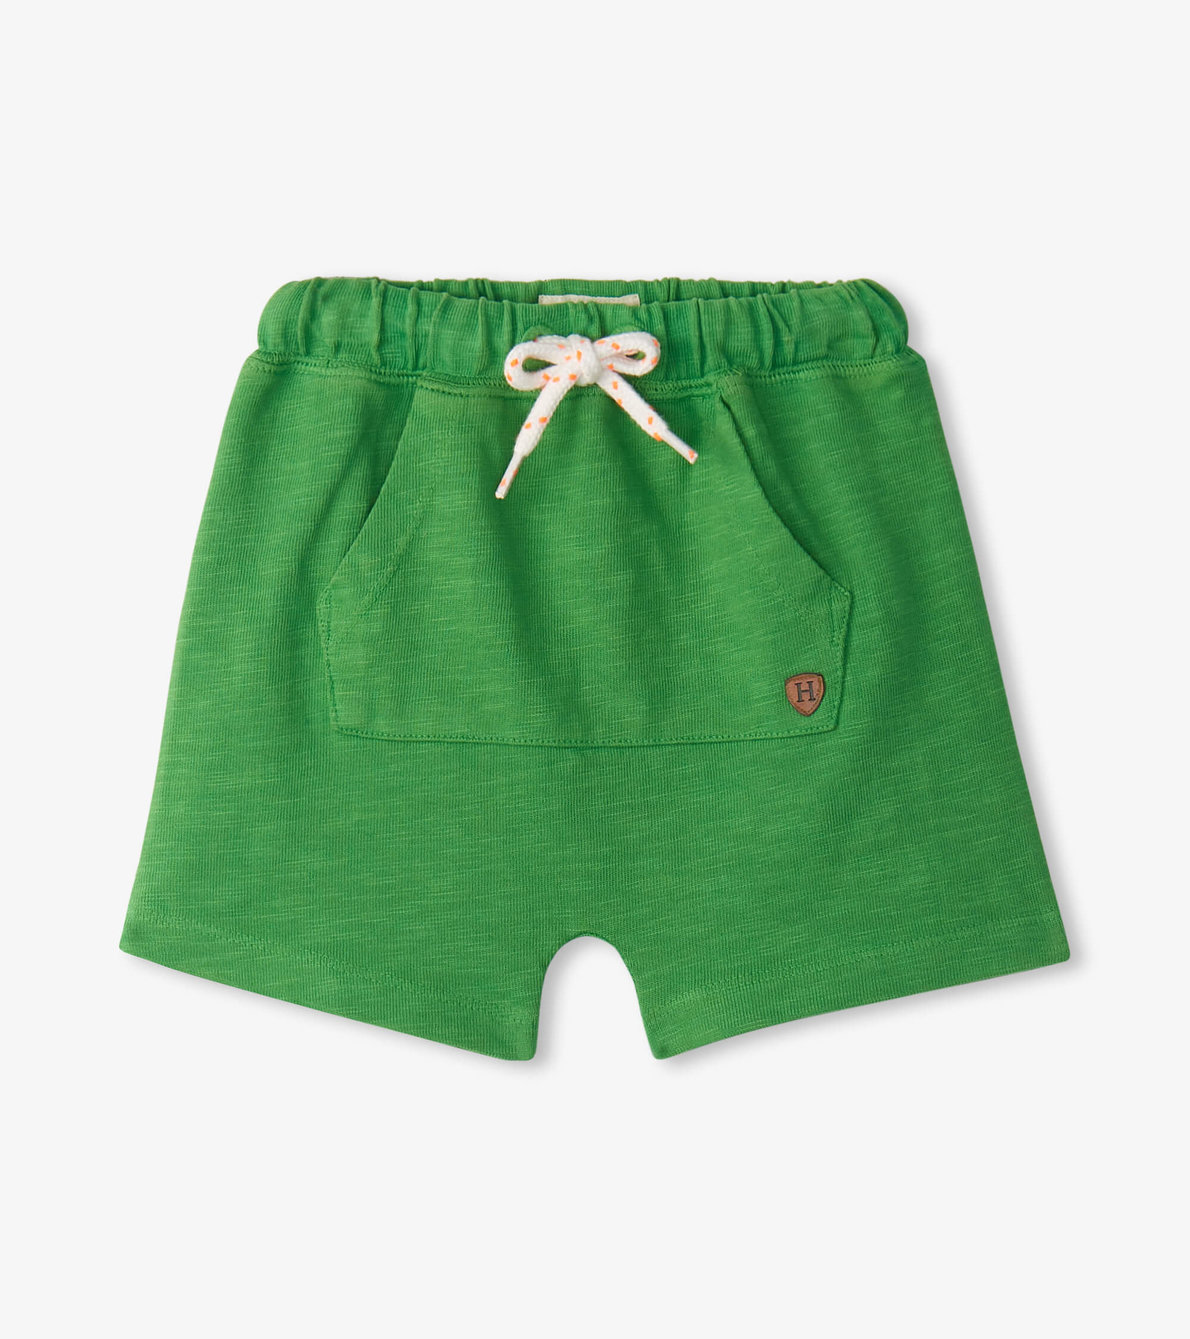 View larger image of Baby & Toddler Boys Camp Green Kangaroo Shorts